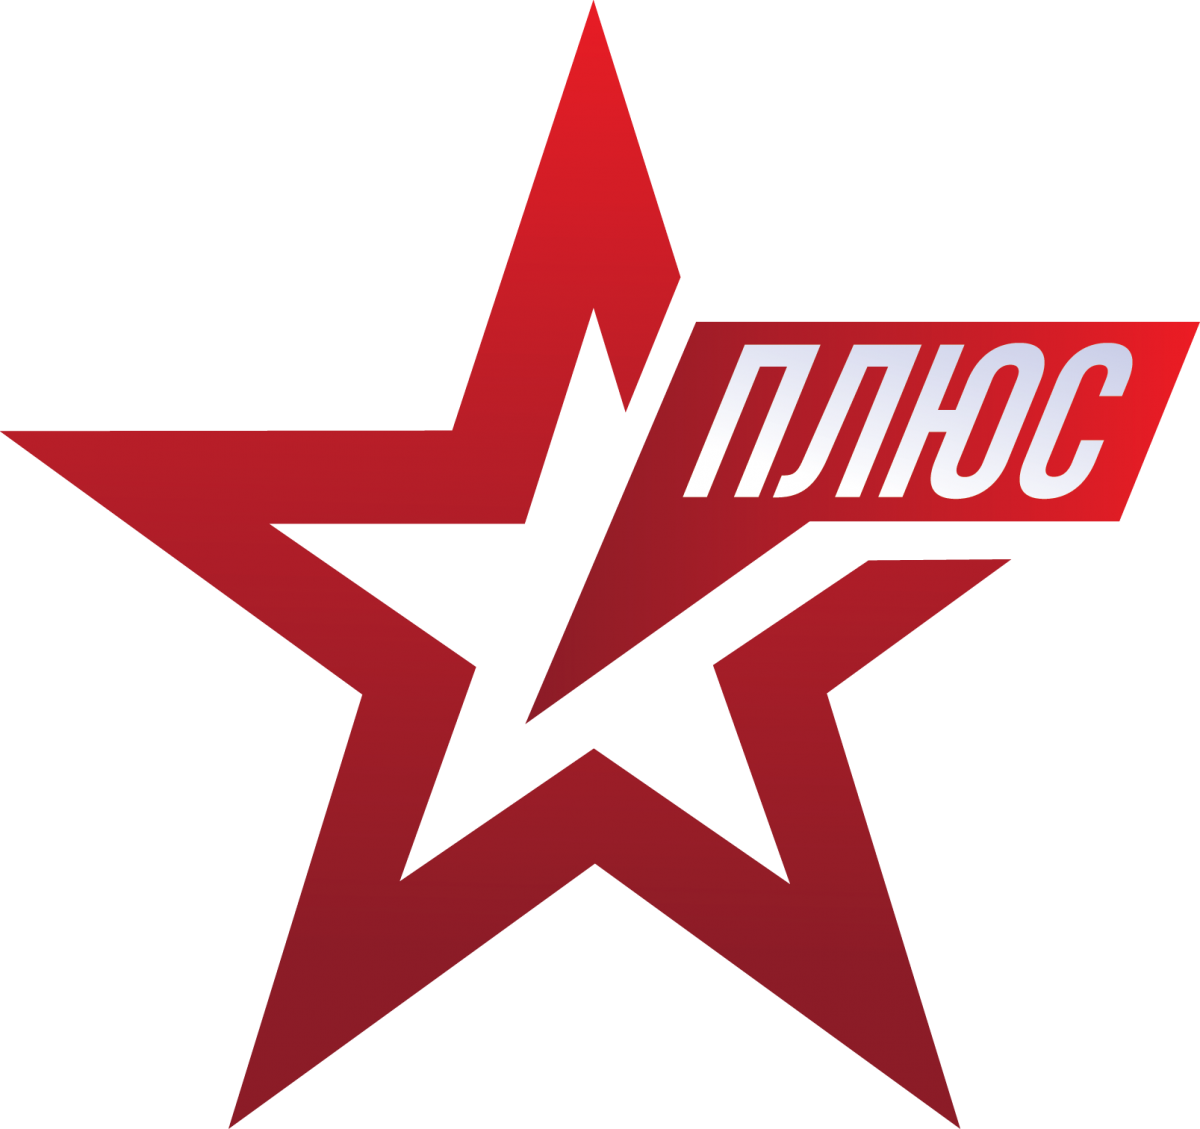 Логотип канала звезда. Телеканал звезда logo. Логотип телеканала Звязда. Канал звезда плюс. Телеканал звезда прямой эфир сегодня